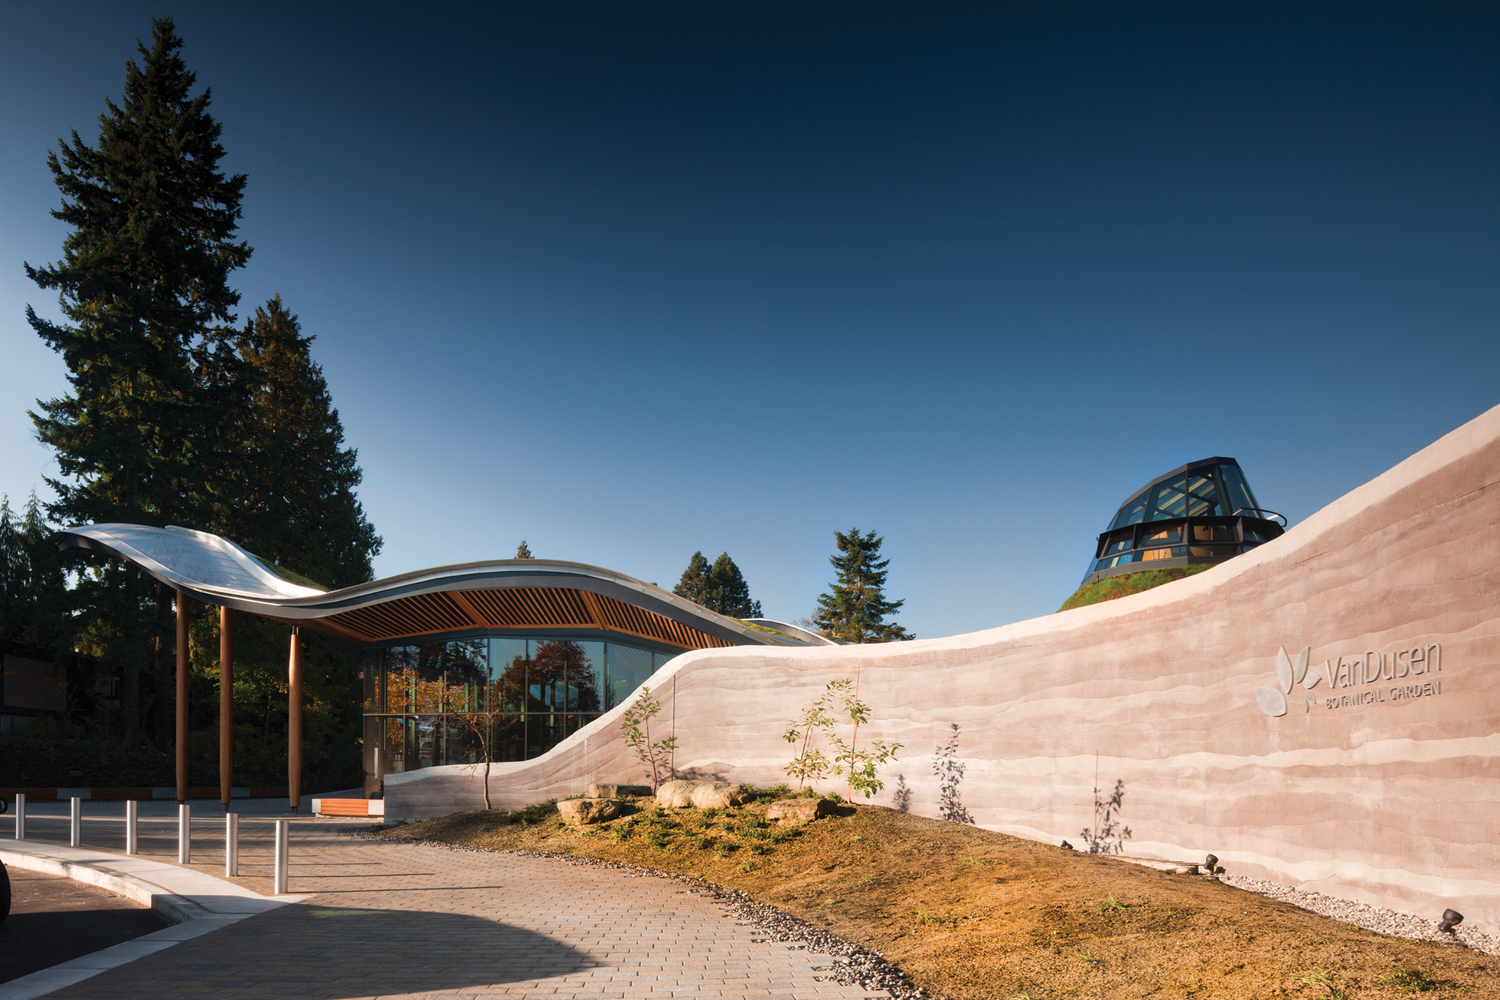 Centro visitatori del giardino botanico VanDusen